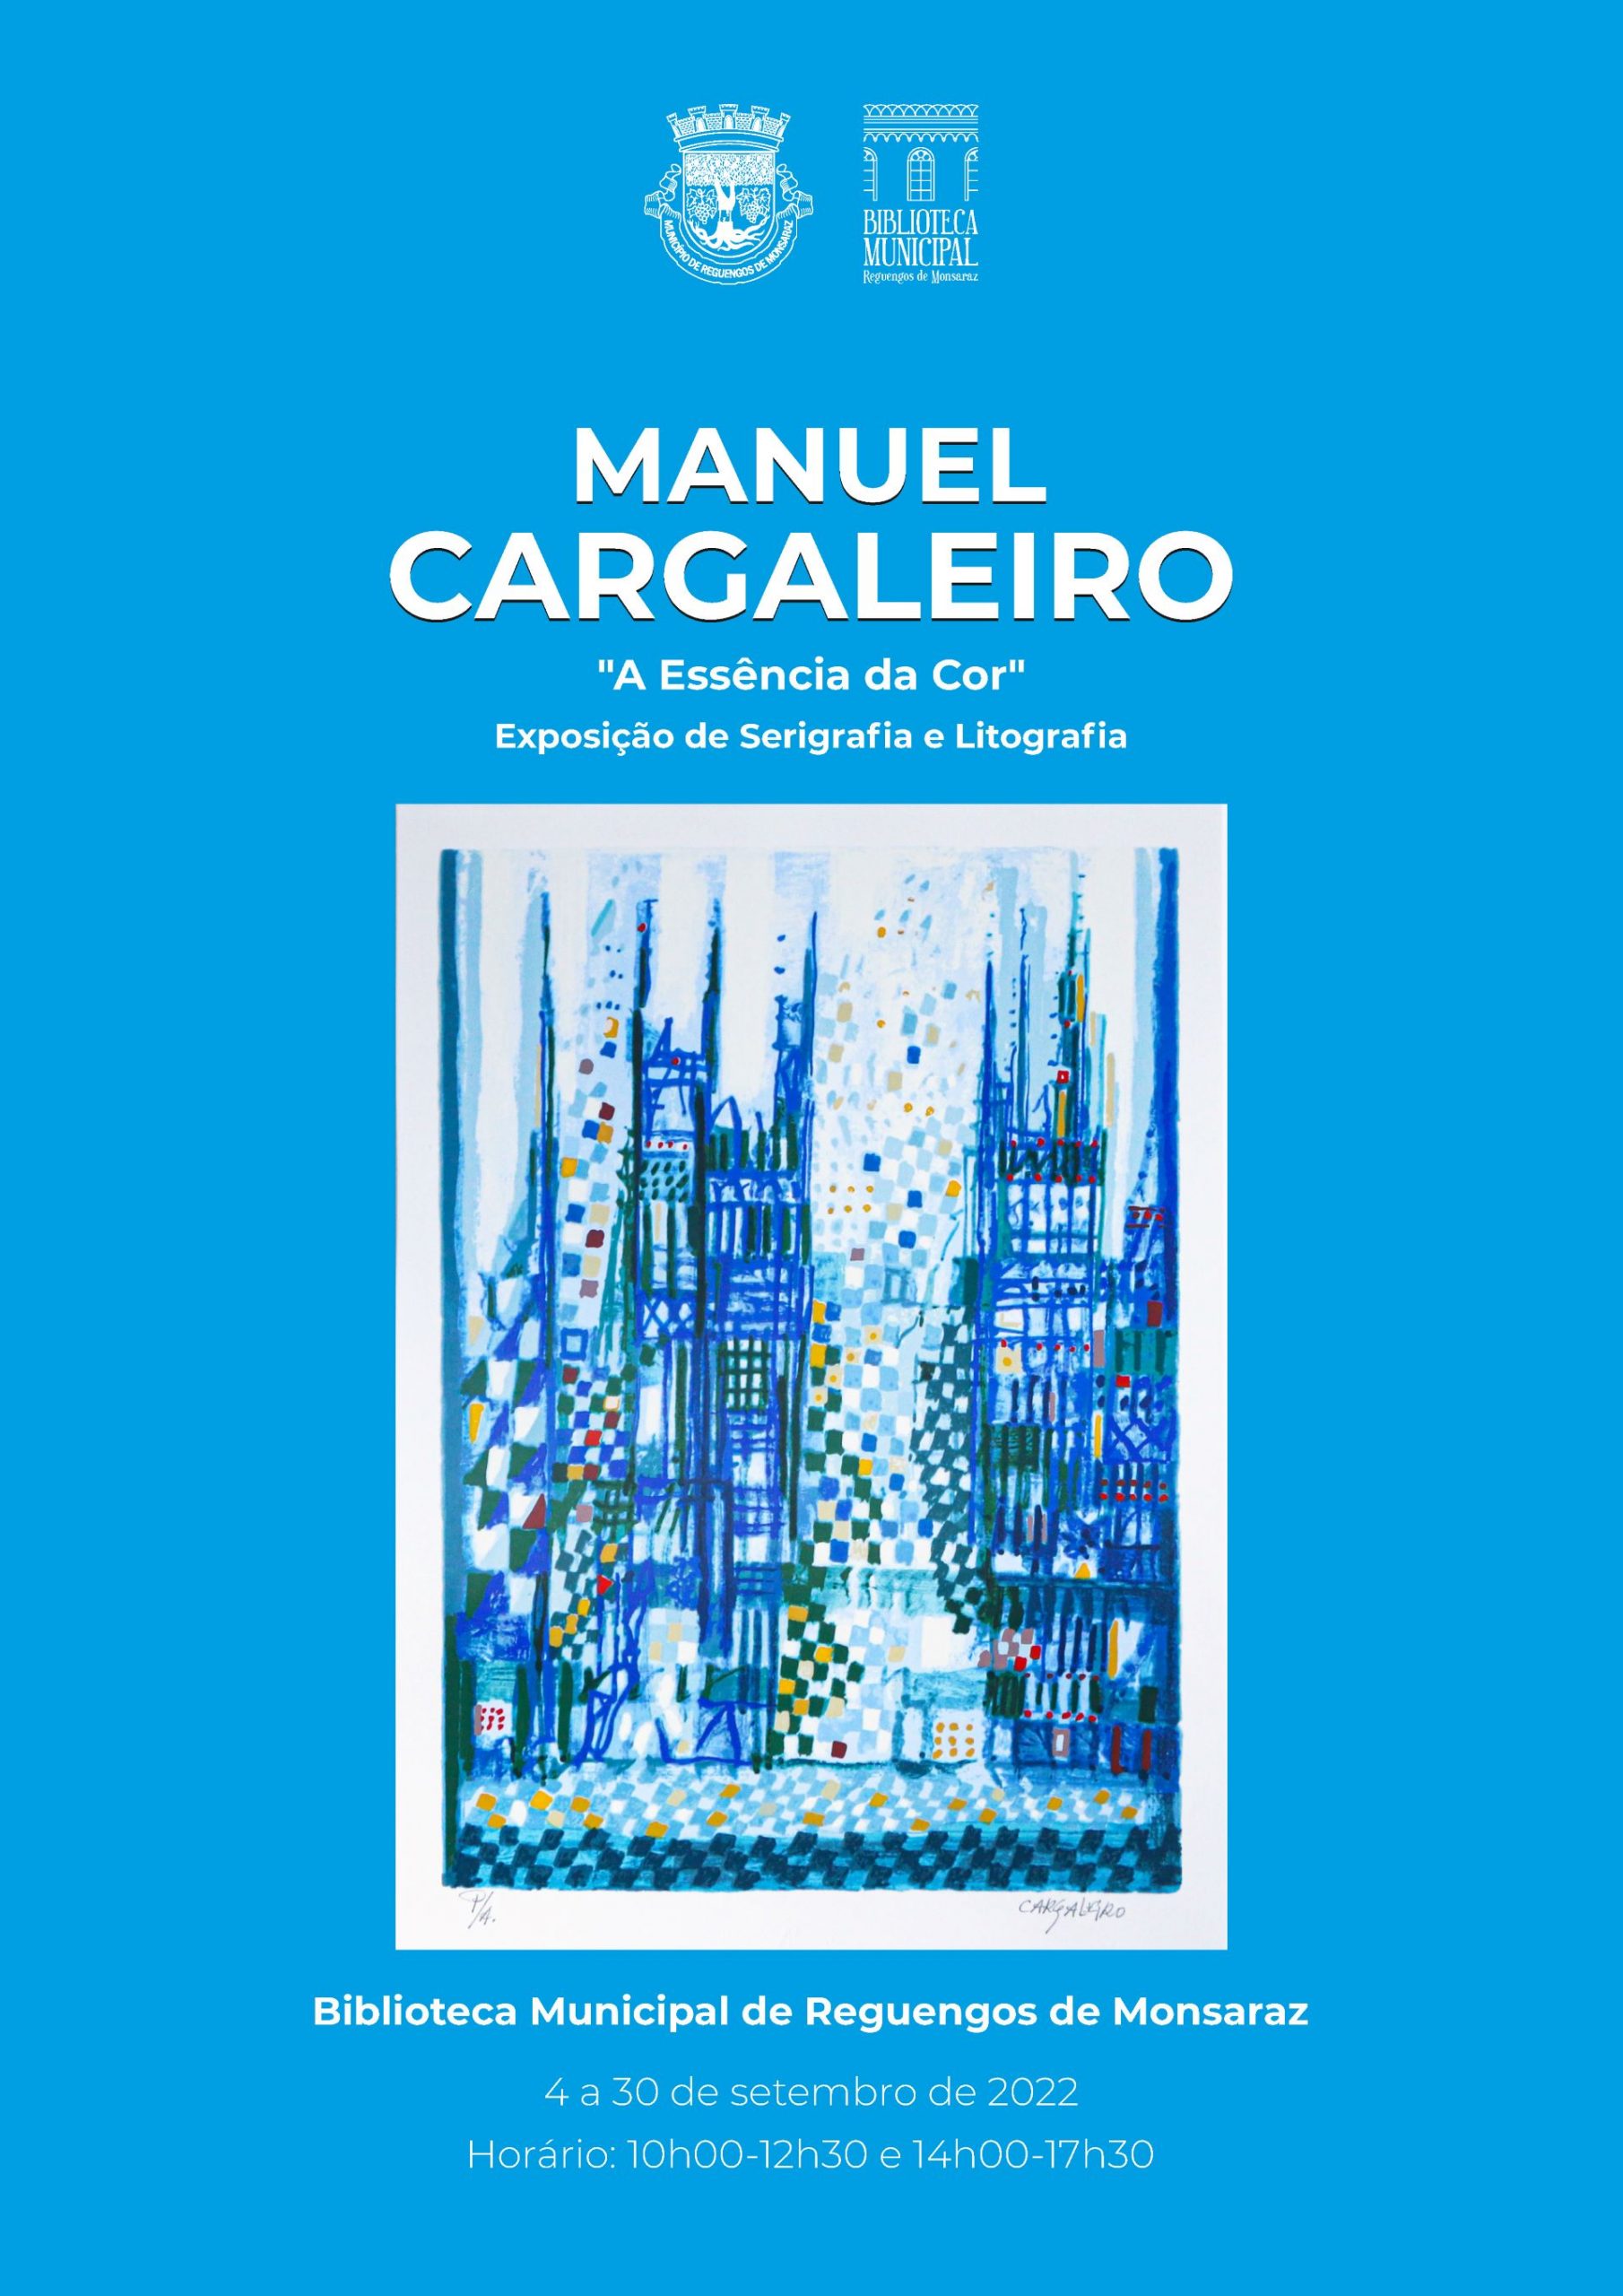 “A Essência da Cor” exposição de Manuel Cargaleiro em Reguengos de Monsaraz